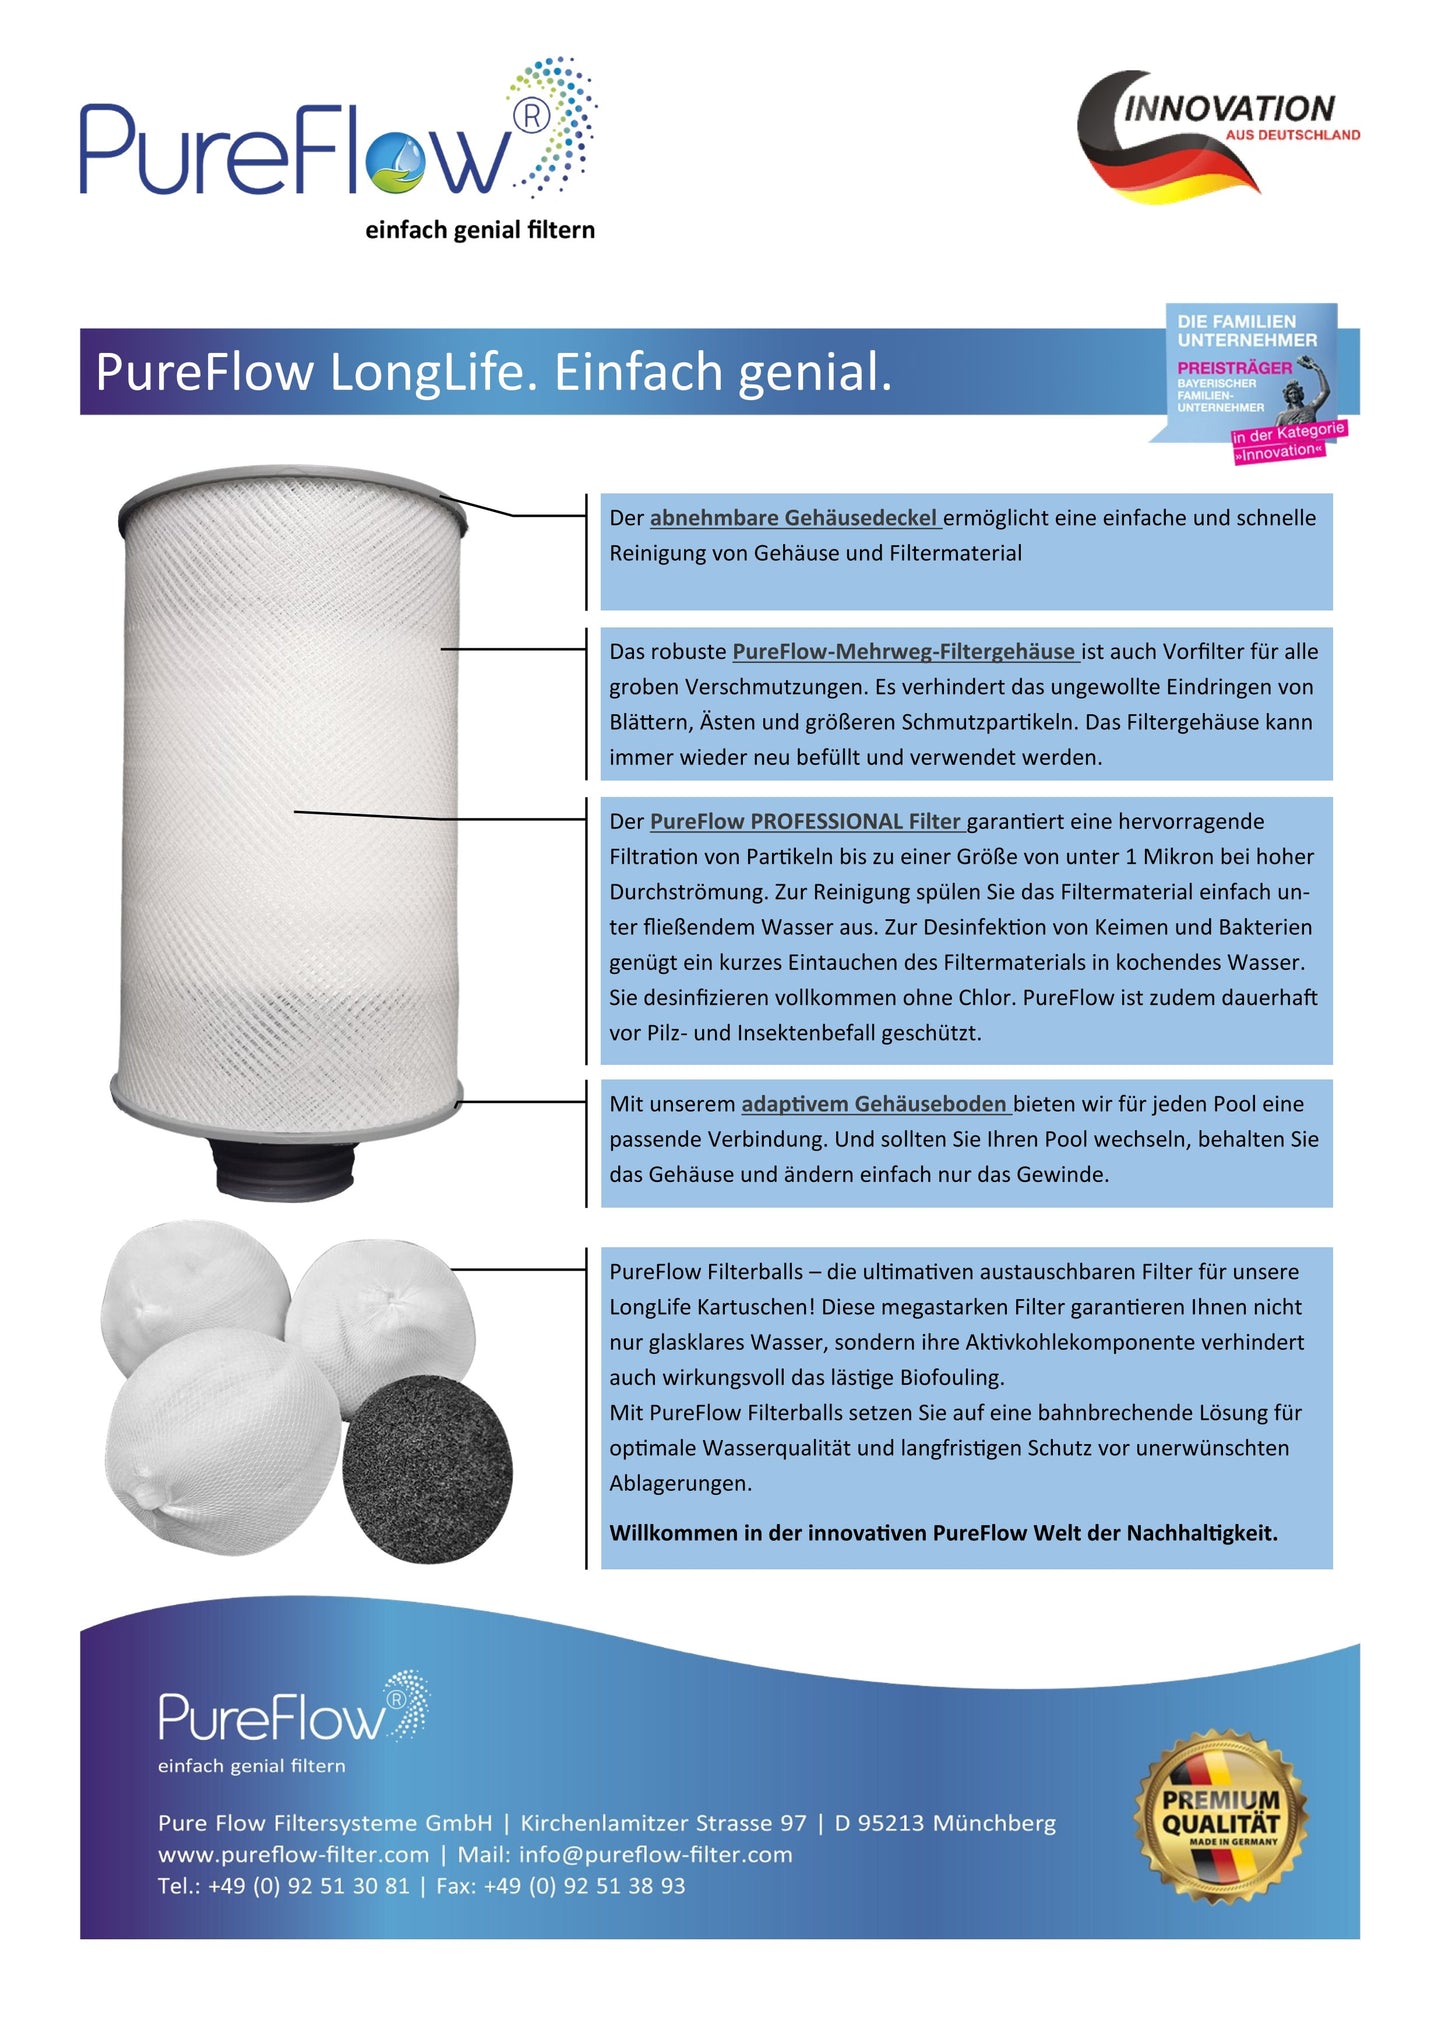 PureFlow LongLife Kartuschenfilter: Mehrweg-Filtergehäuse mit adaptiven Gehäuseboden für jeden Pool. Filterballs austauschbar, hohe Trennschärfe – Filtration unter 1 Mikron. Herstellerunabhängig, reduziert Müll, spart Kosten. Inkl PureFlow Aktivkohle.